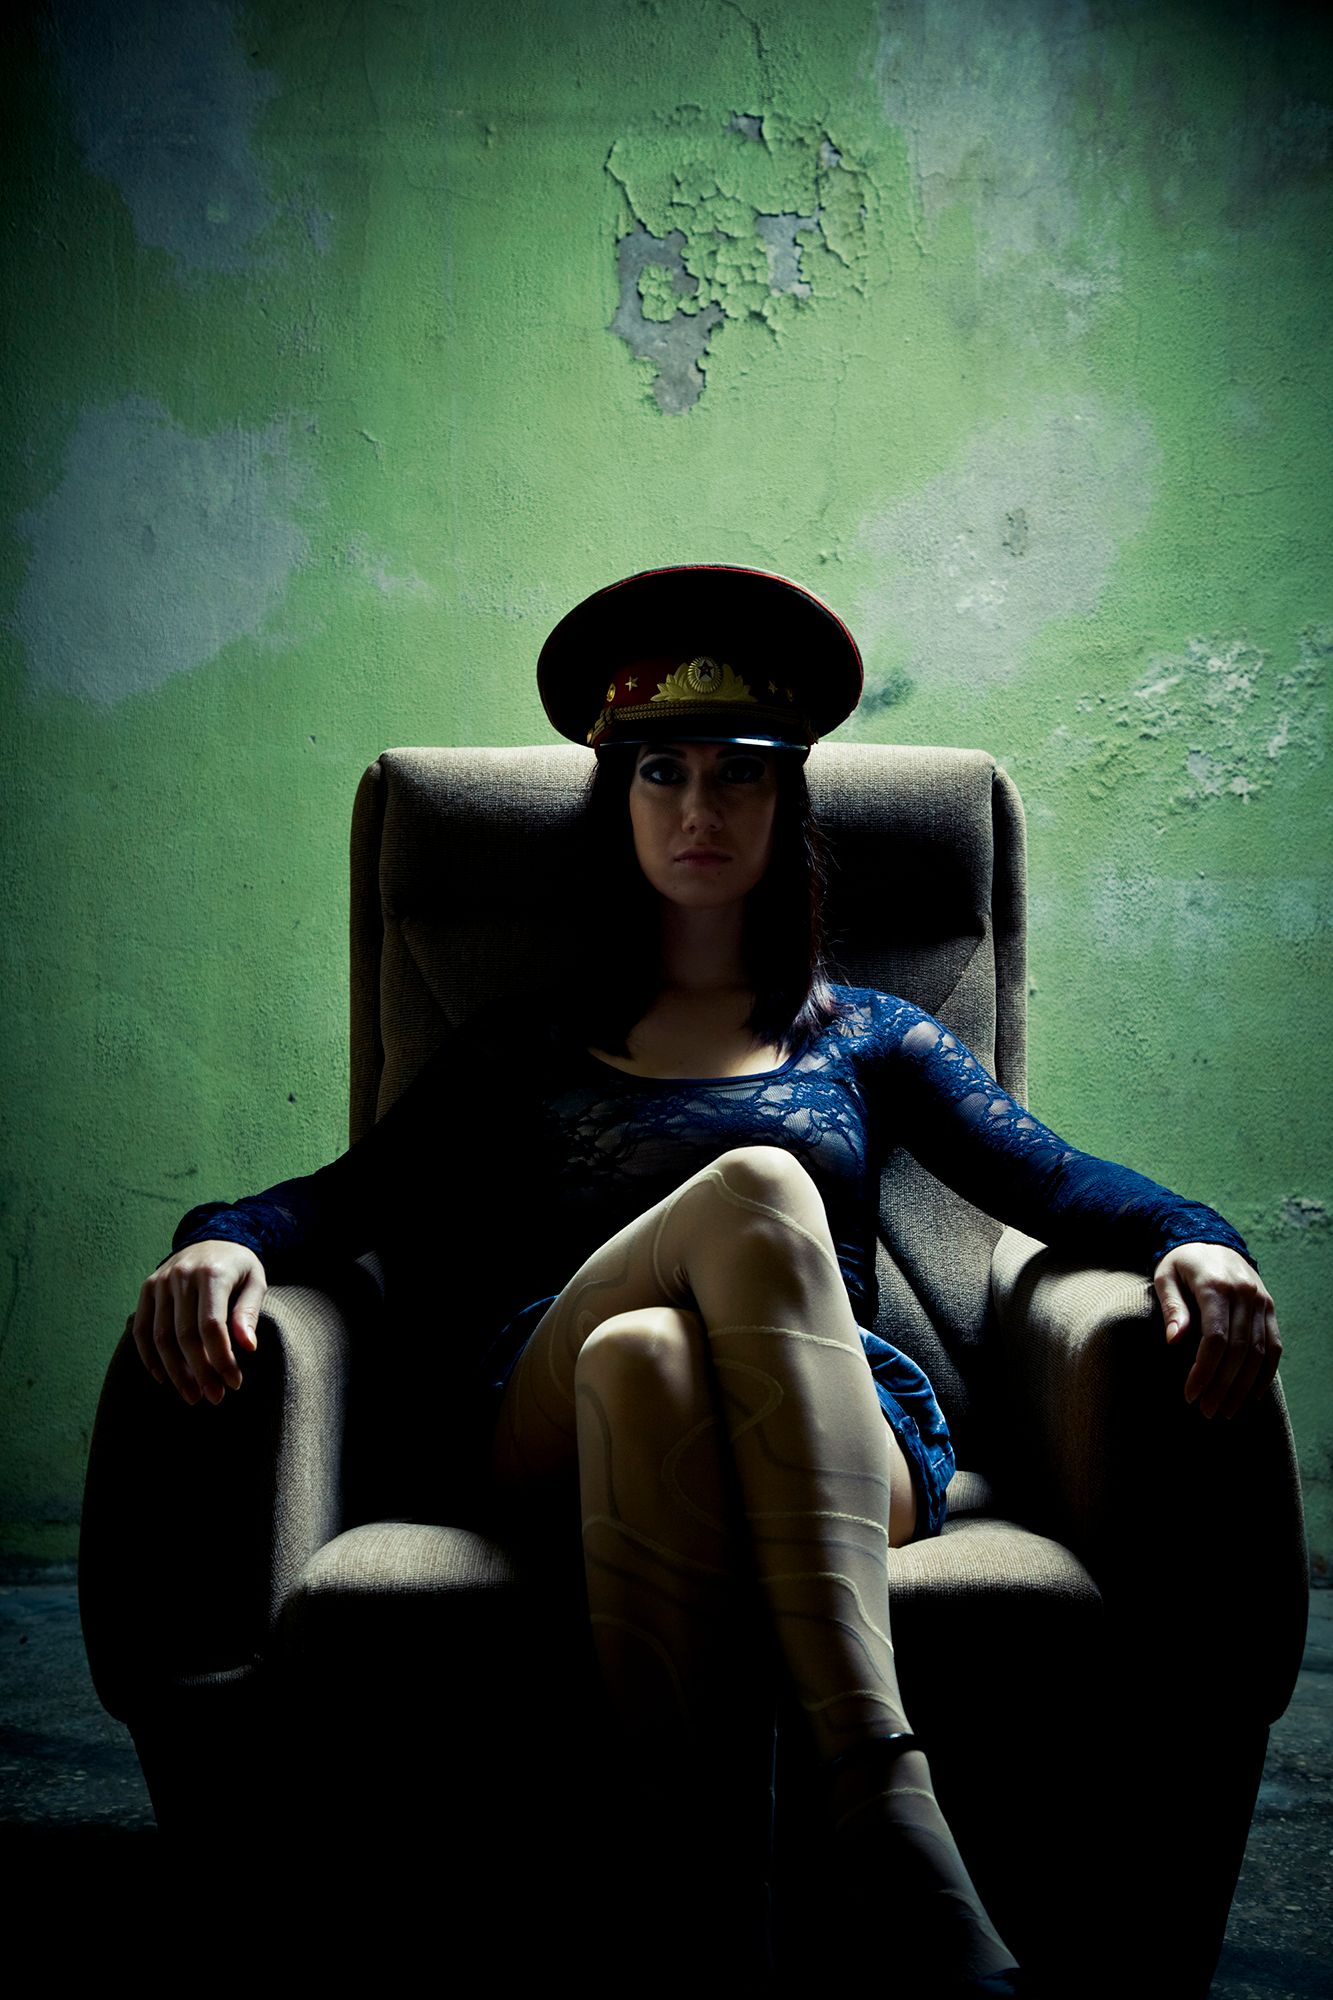 Domina Telefonsex - Abbildung einer Frau mit Polizei-Hut, welche mit überschlagenen Beinen auf einem Sessel sitzt.